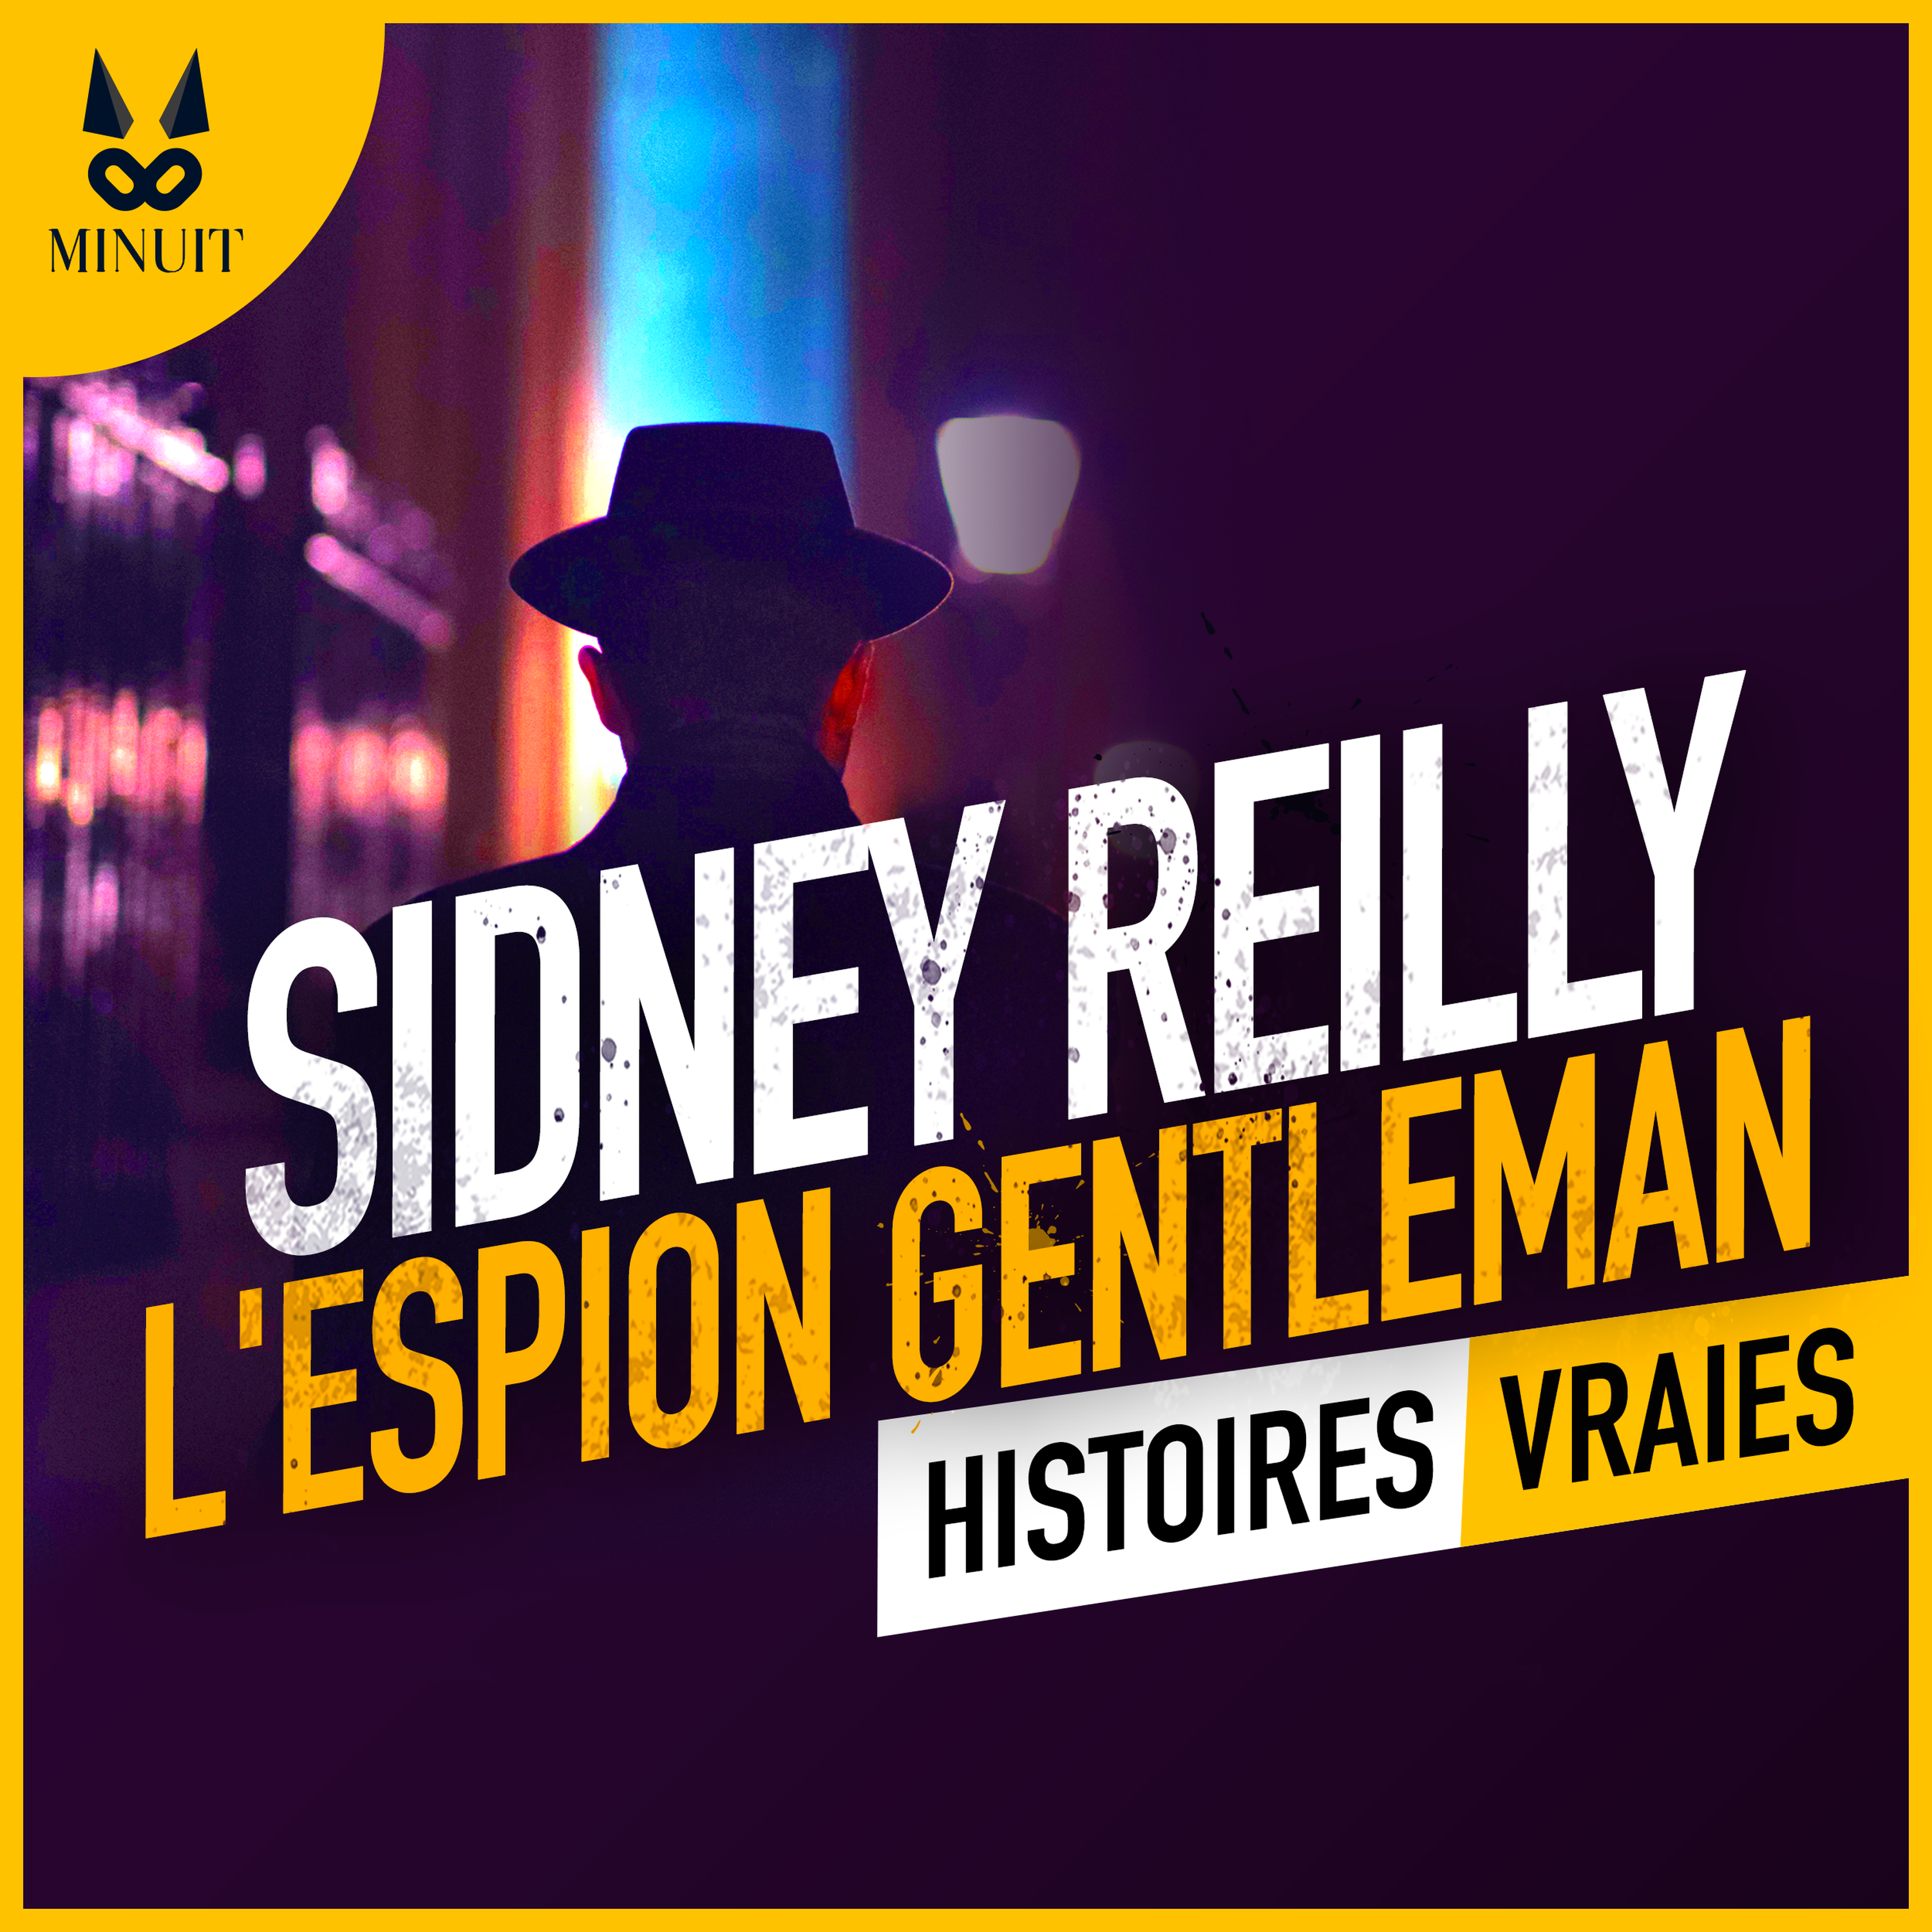 Sidney Reilly, l'espion gentleman